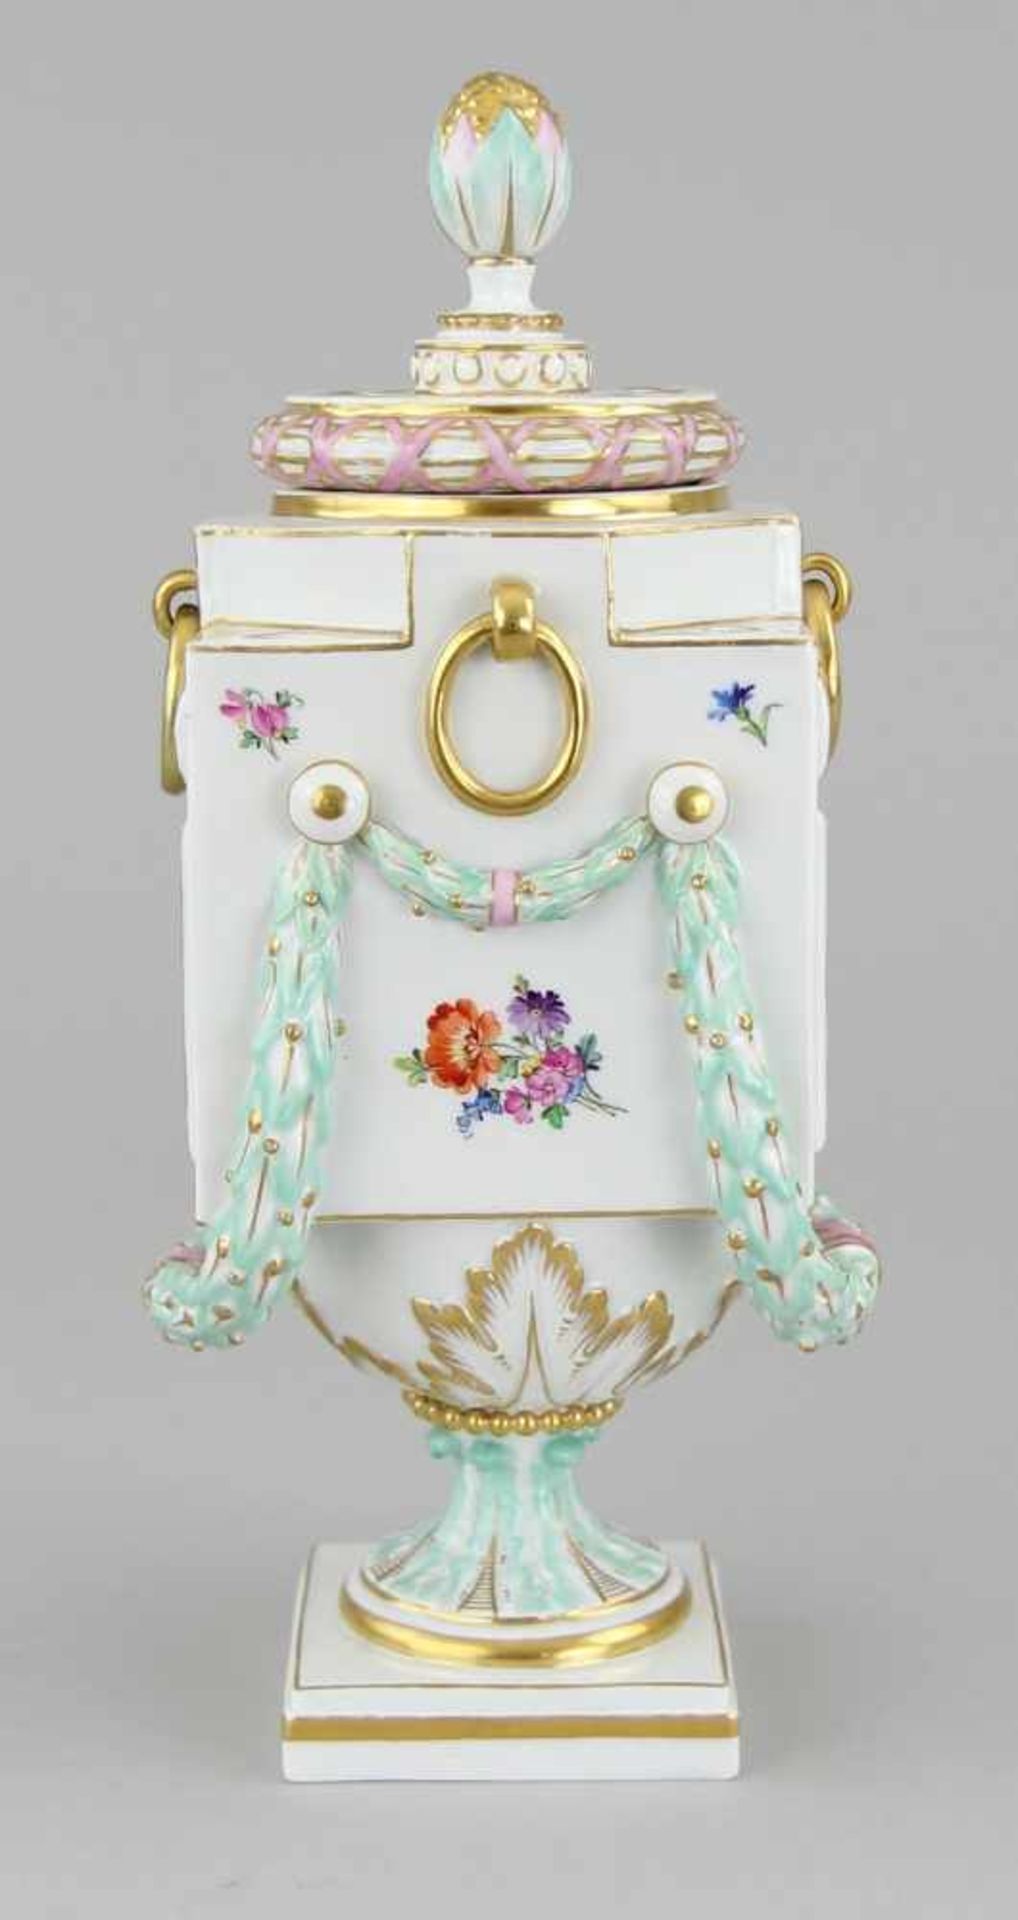 Seltene Meissen - Potpourri - Vase Porzellan Porzellan farbig bemalt und vergoldet, reichverzierte - Image 3 of 8